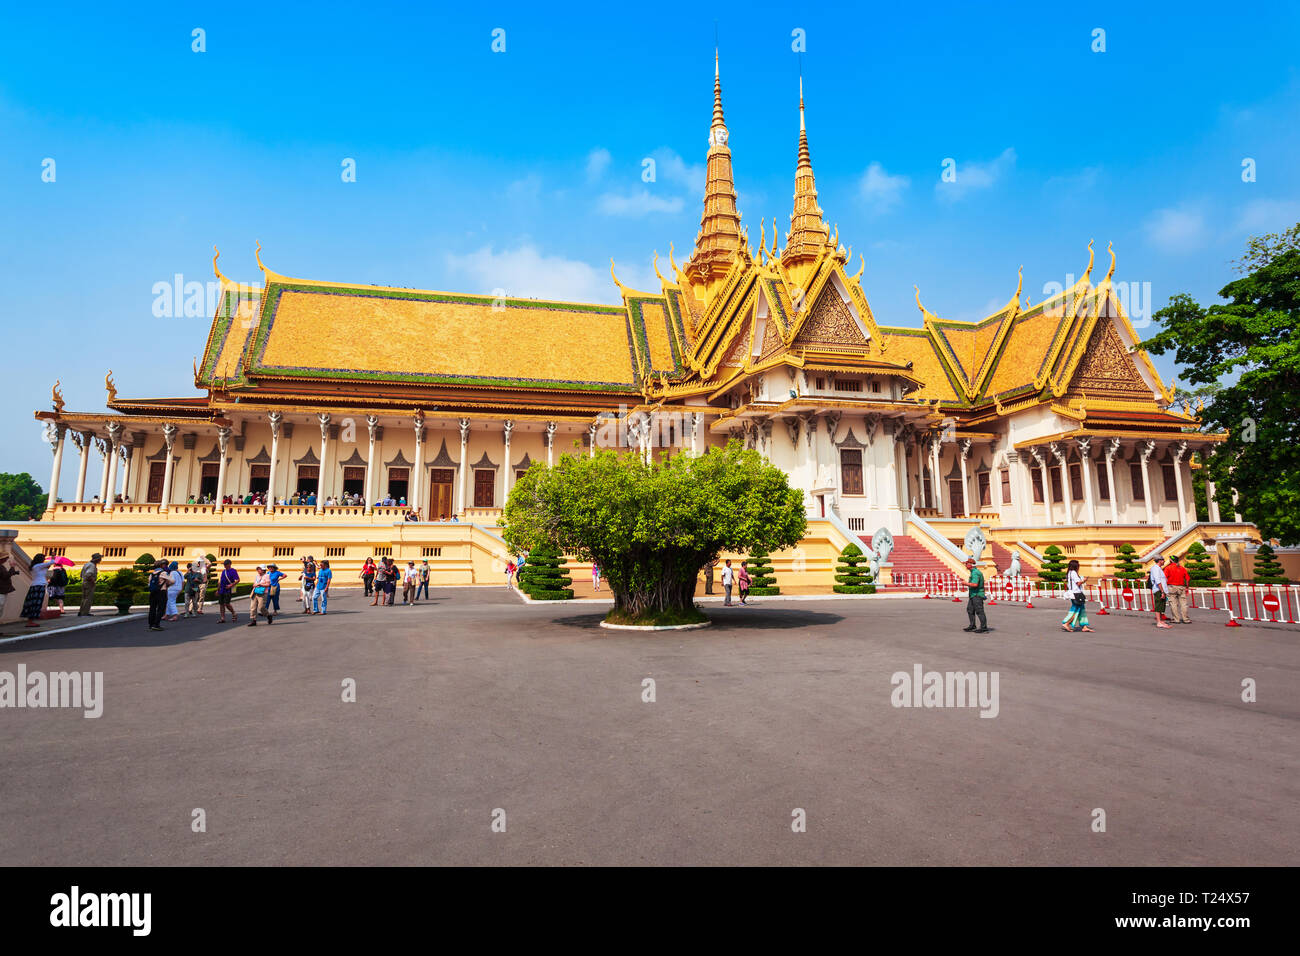 PHNOM PENH, Kambodscha - 24. MÄRZ 2018: Der Königliche Palast, die Königliche Residenz des Königs von Kambodscha in Phnom Penh in Kambodscha Stockfoto